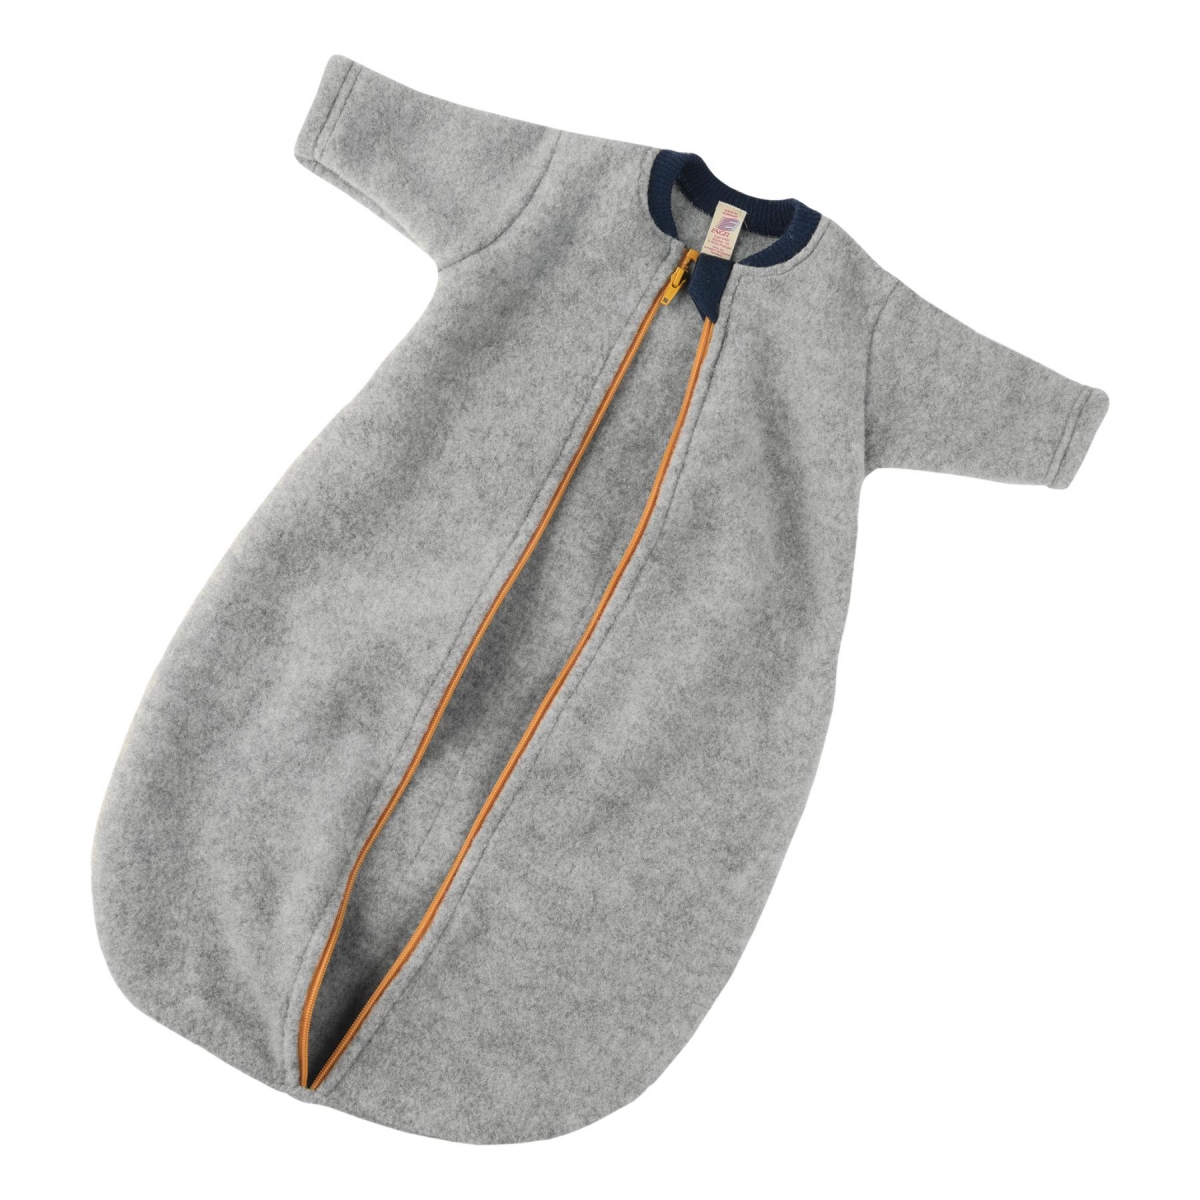 ENGEL Natur Baby sleeping-bag sleeve grey melange with zip 576010-091 